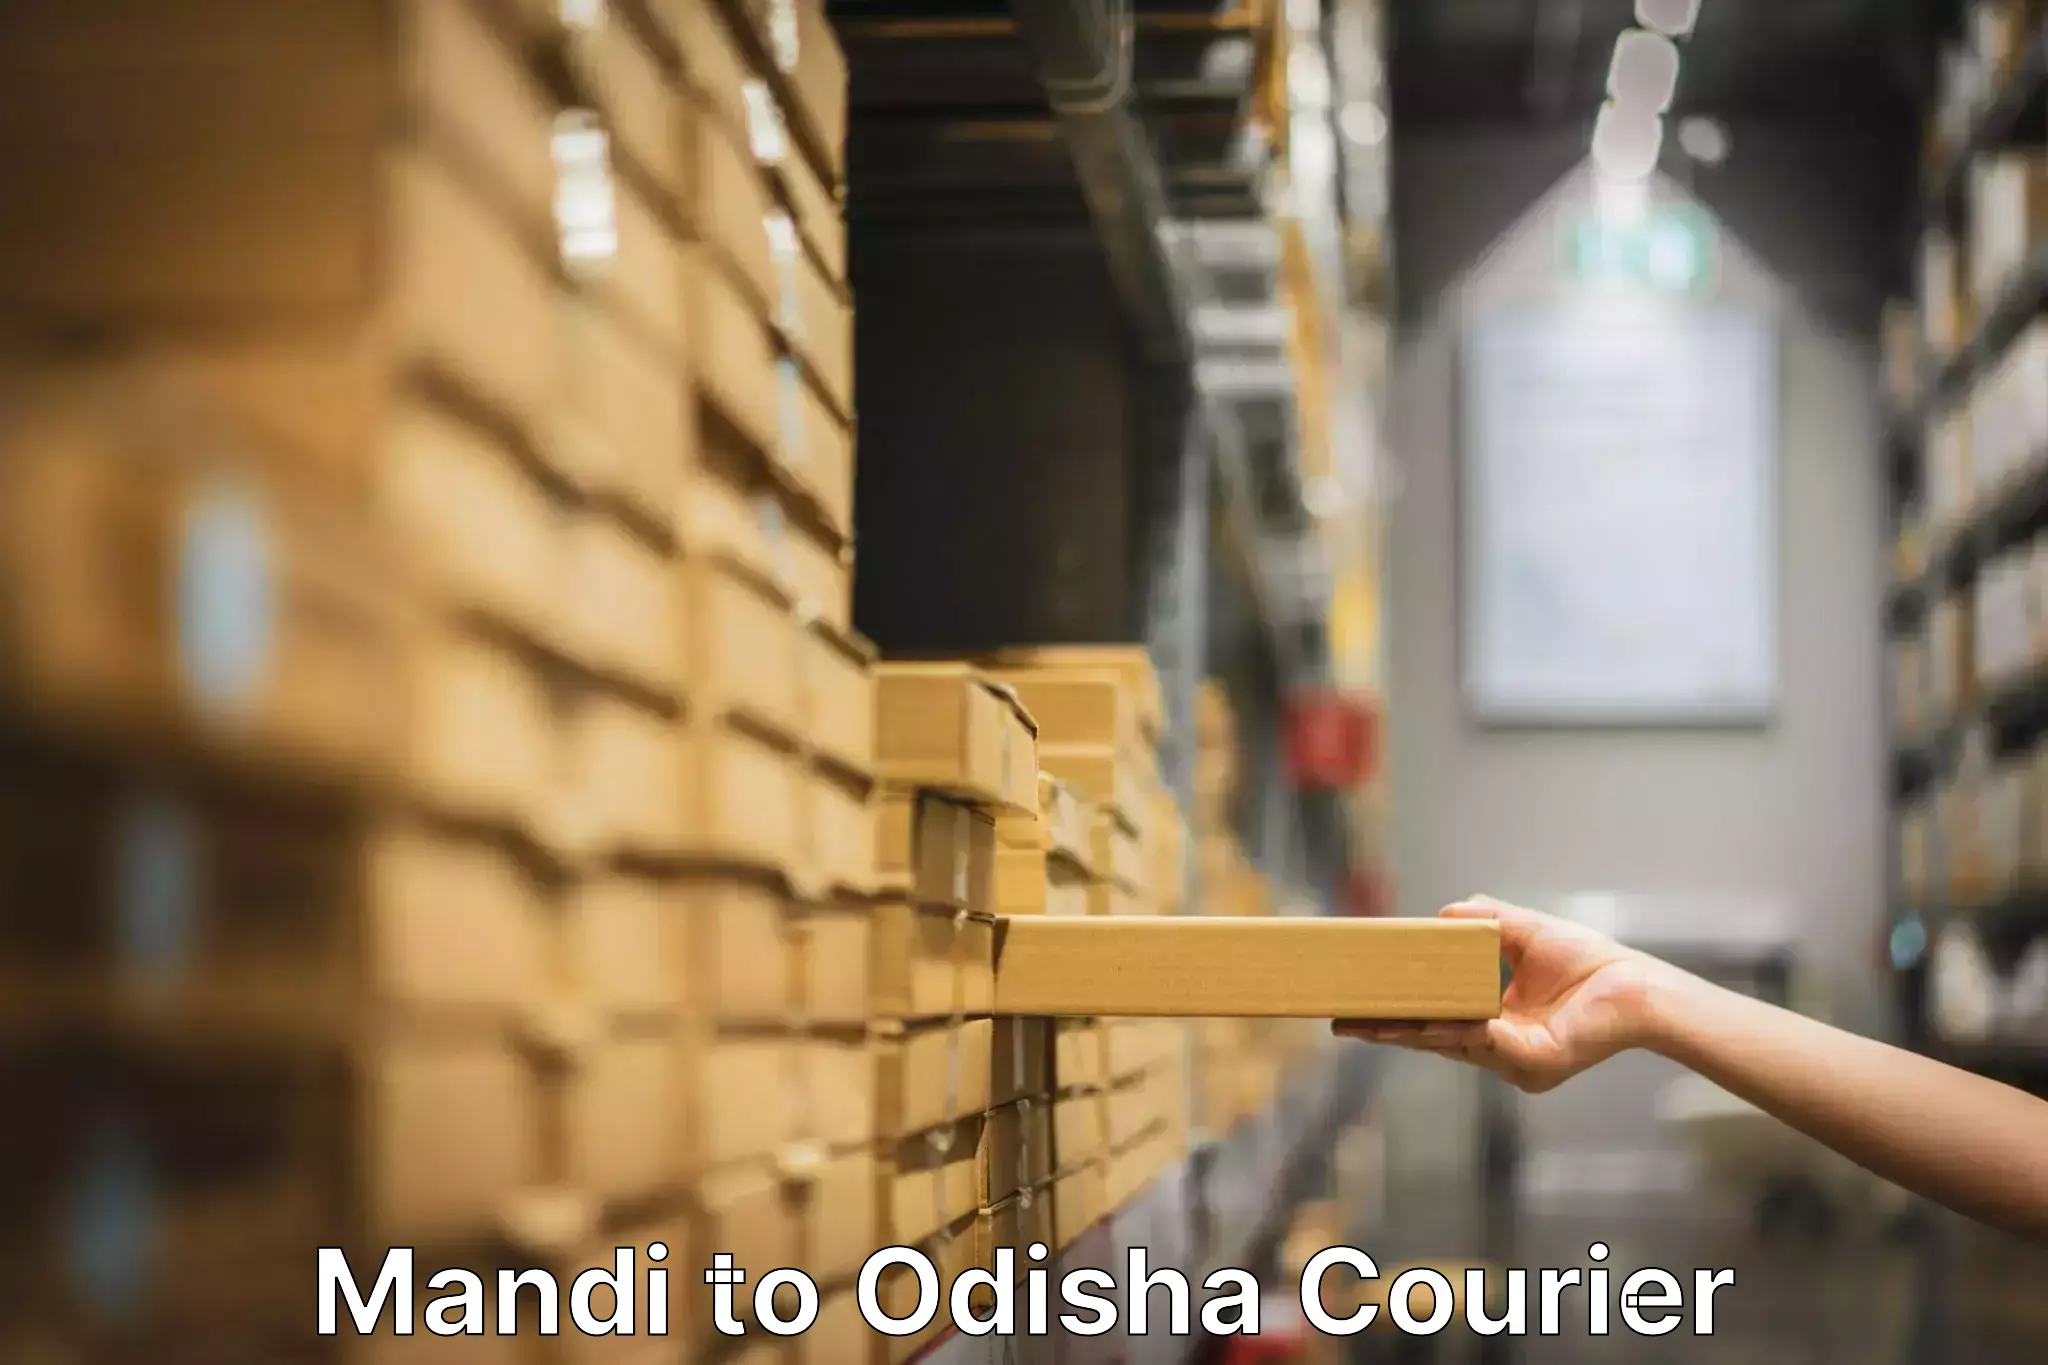 Furniture transport company Mandi to Chikiti